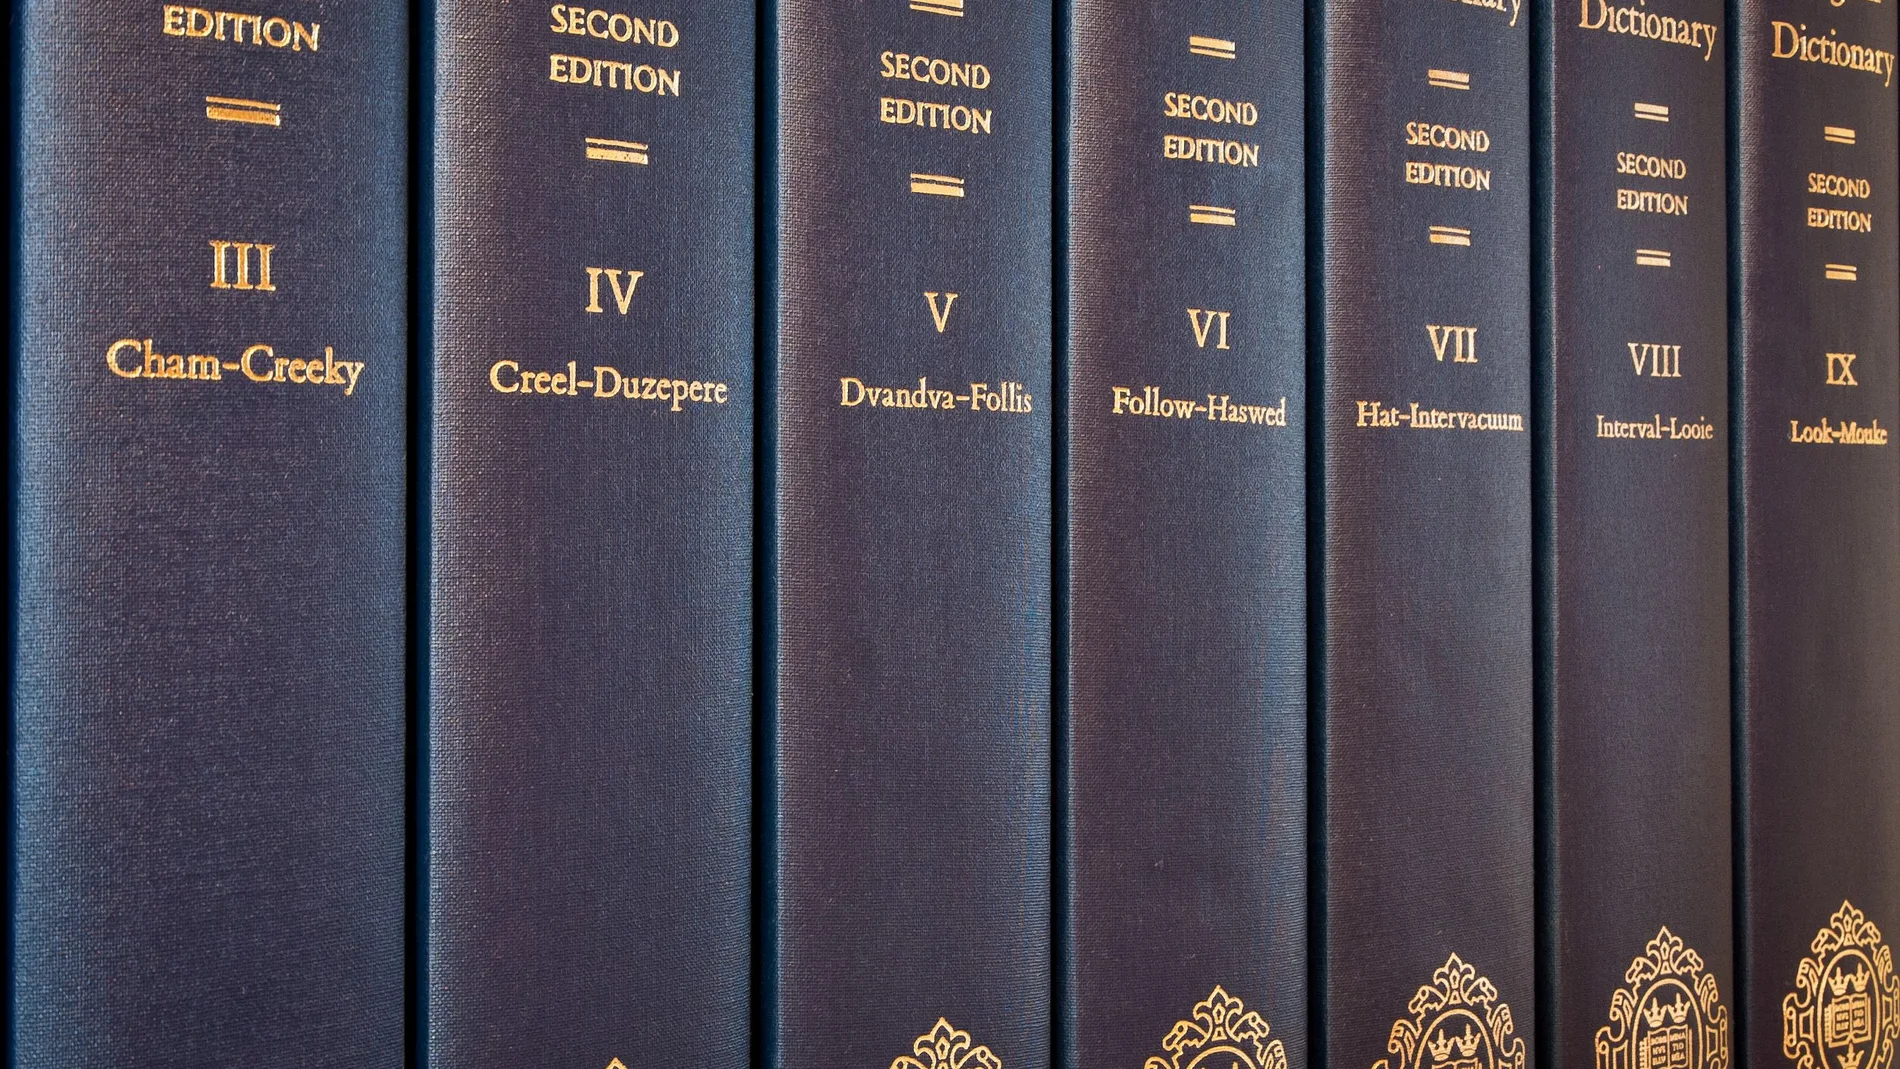 La segunda edición del Oxford Dictionary